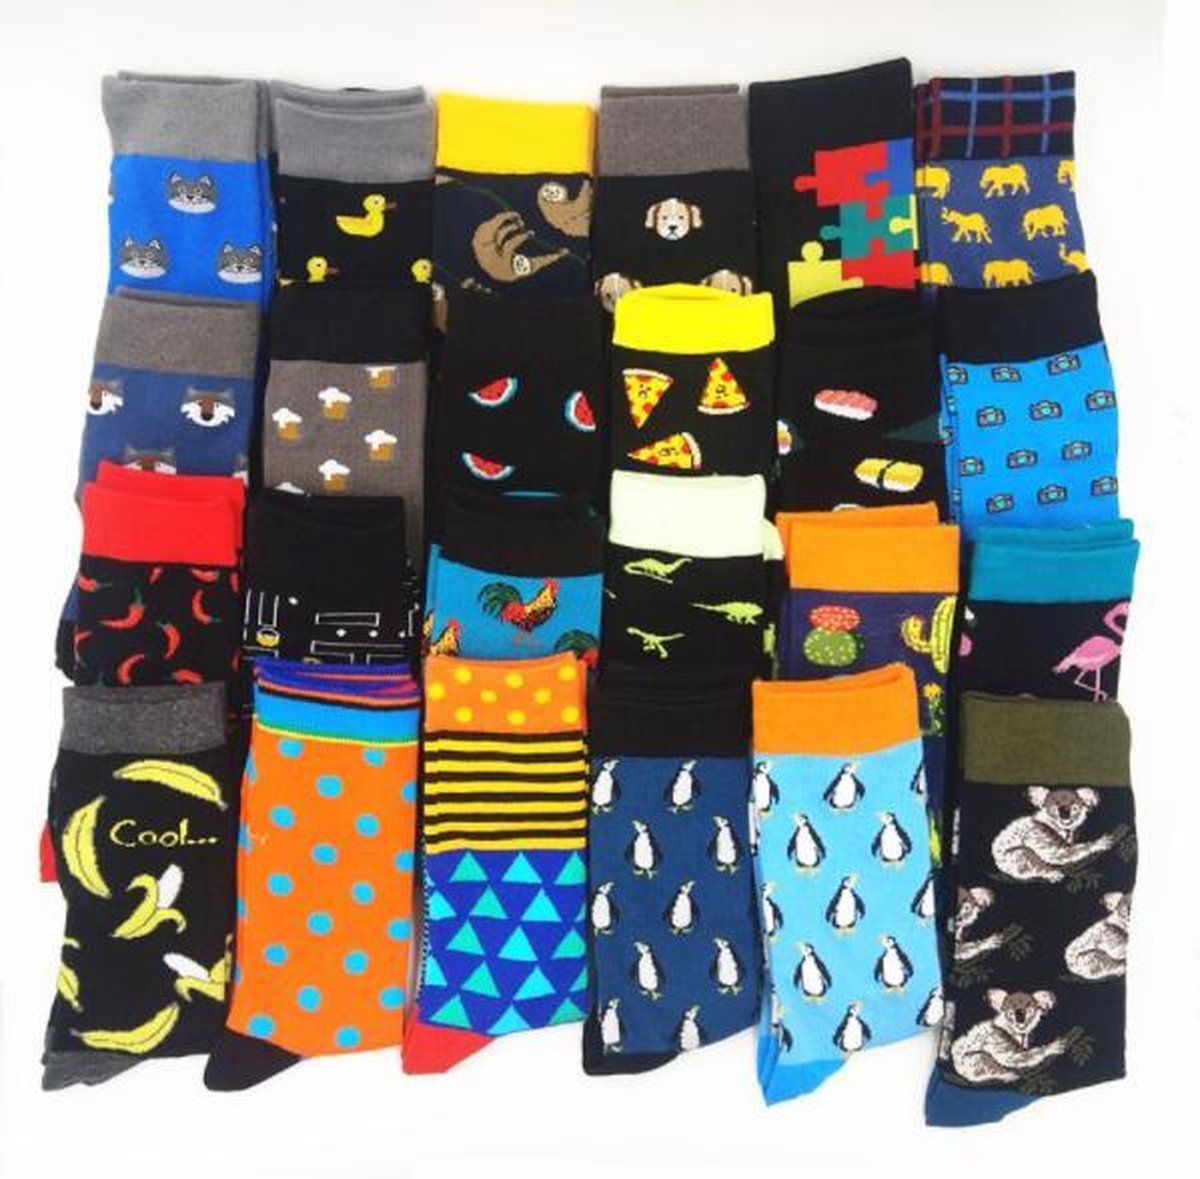 Heren sokken 6 paar - maat 40-46 - leuke print - mystery / verrassing / random / mix